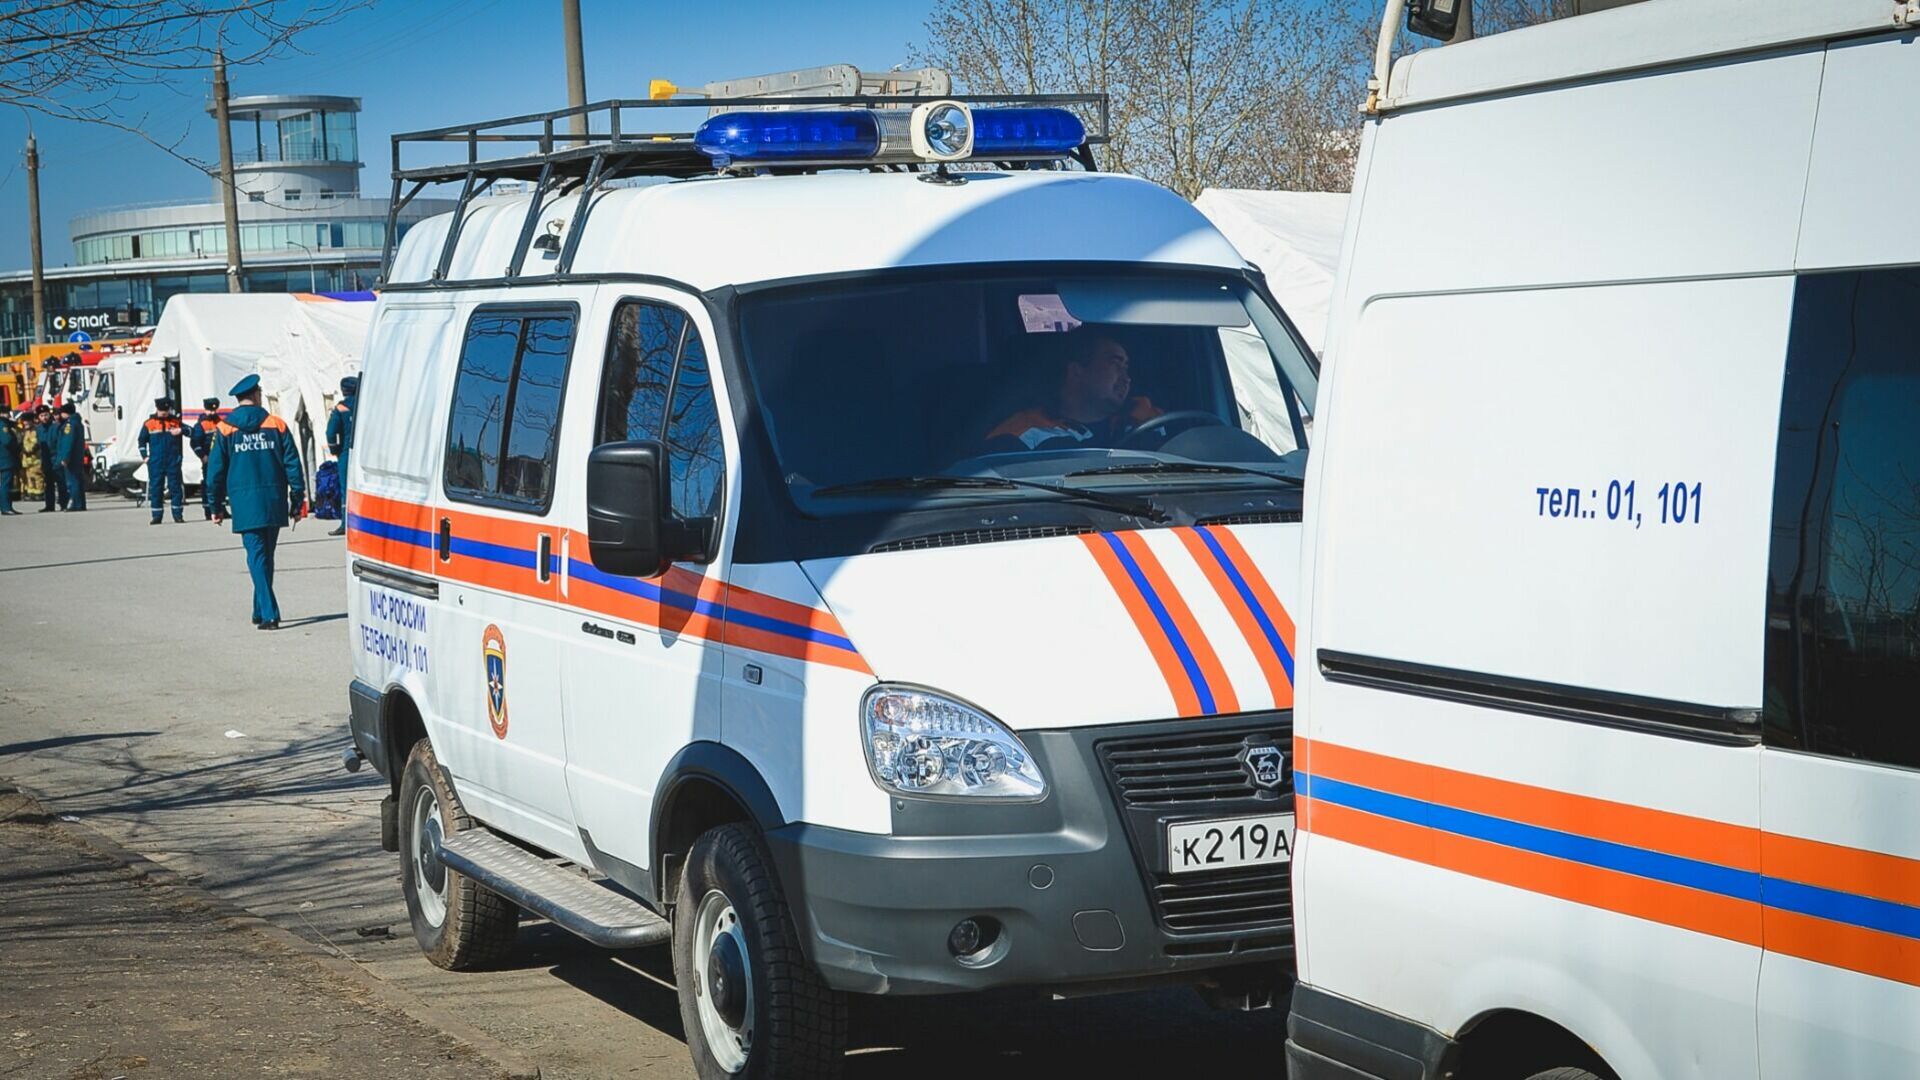 Неизвестные сообщили о минировании здания администрации в Шахтах Ростовской области